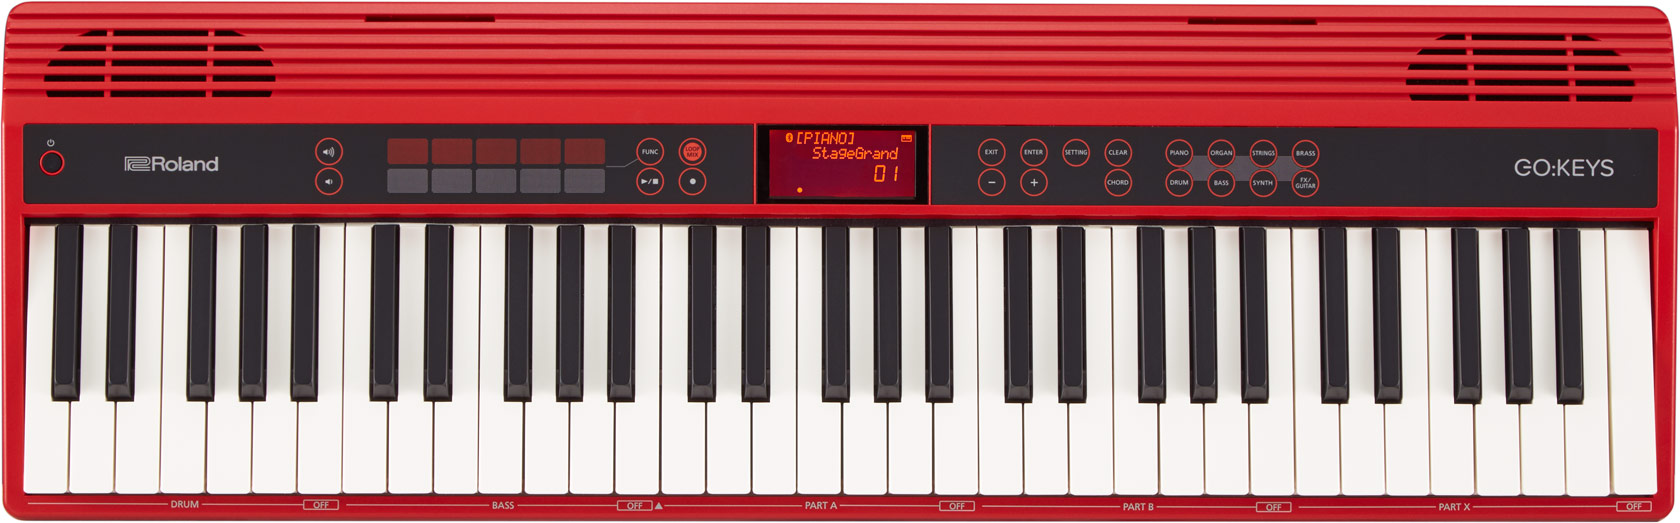 Roland GO-61K GO:Keys (61Keys)